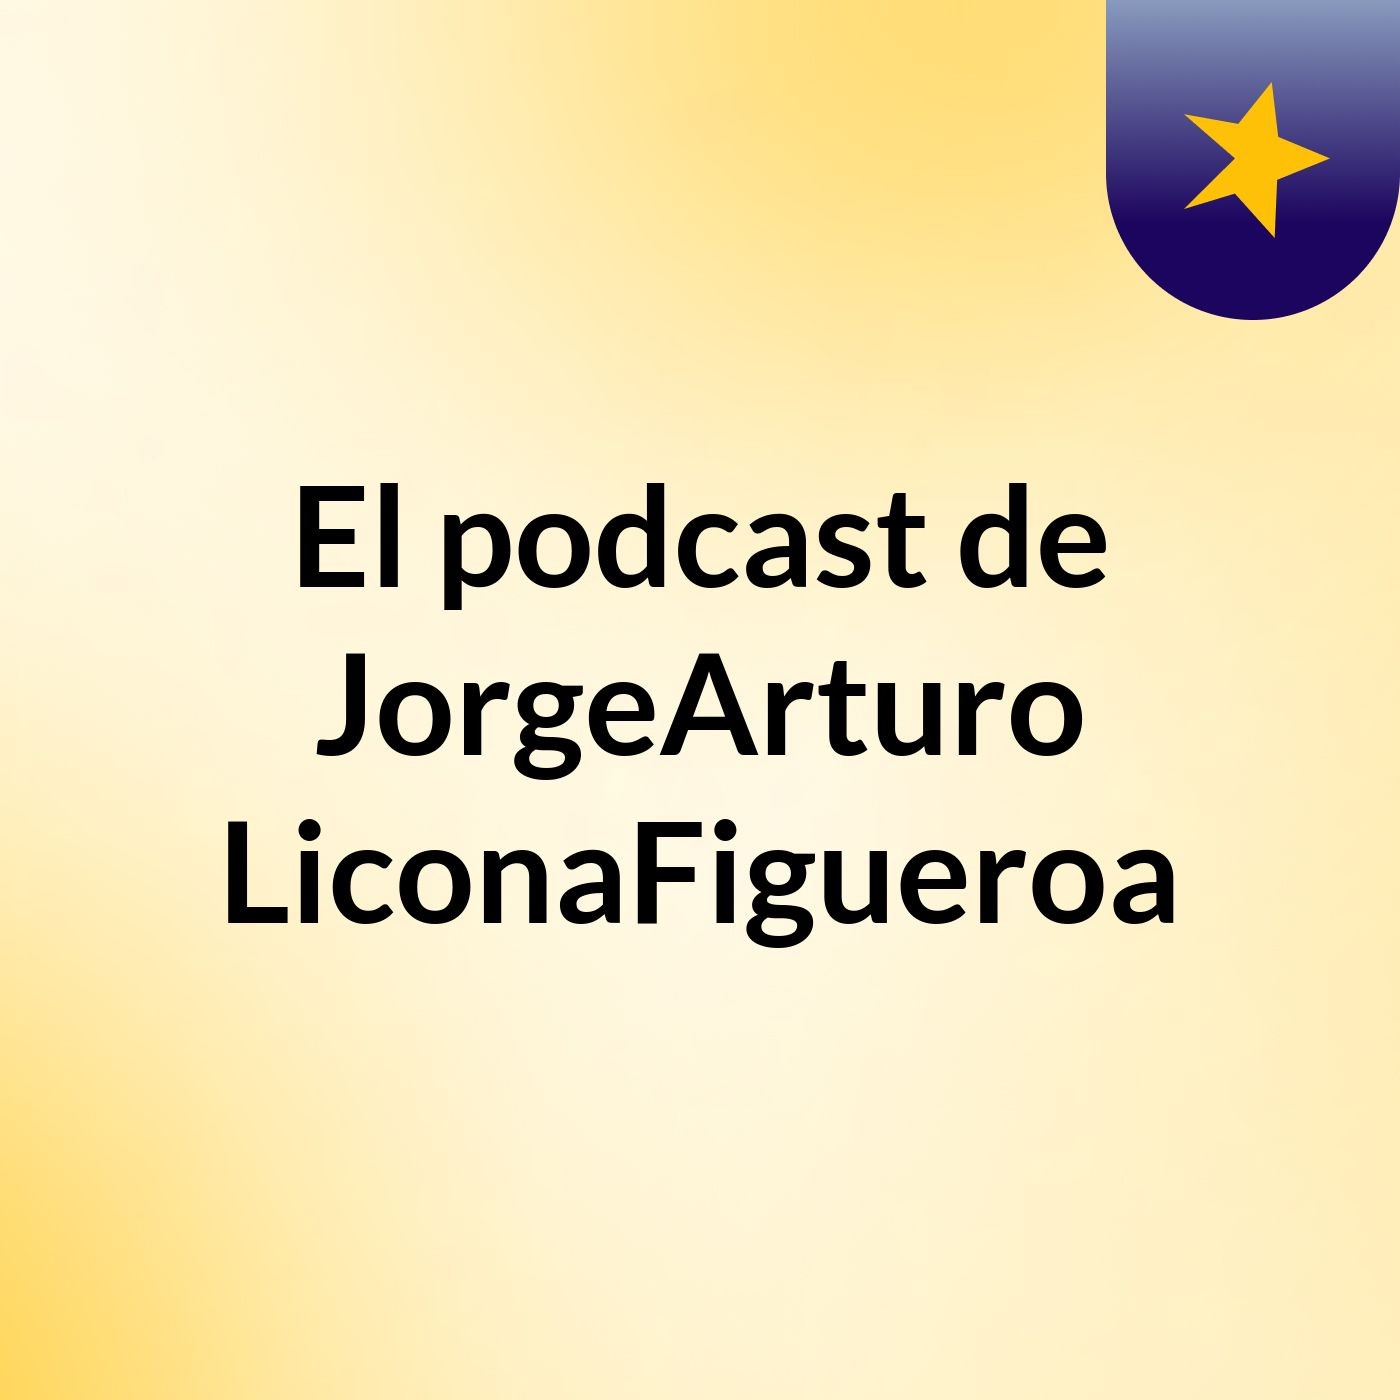 El podcast de JorgeArturo LiconaFigueroa